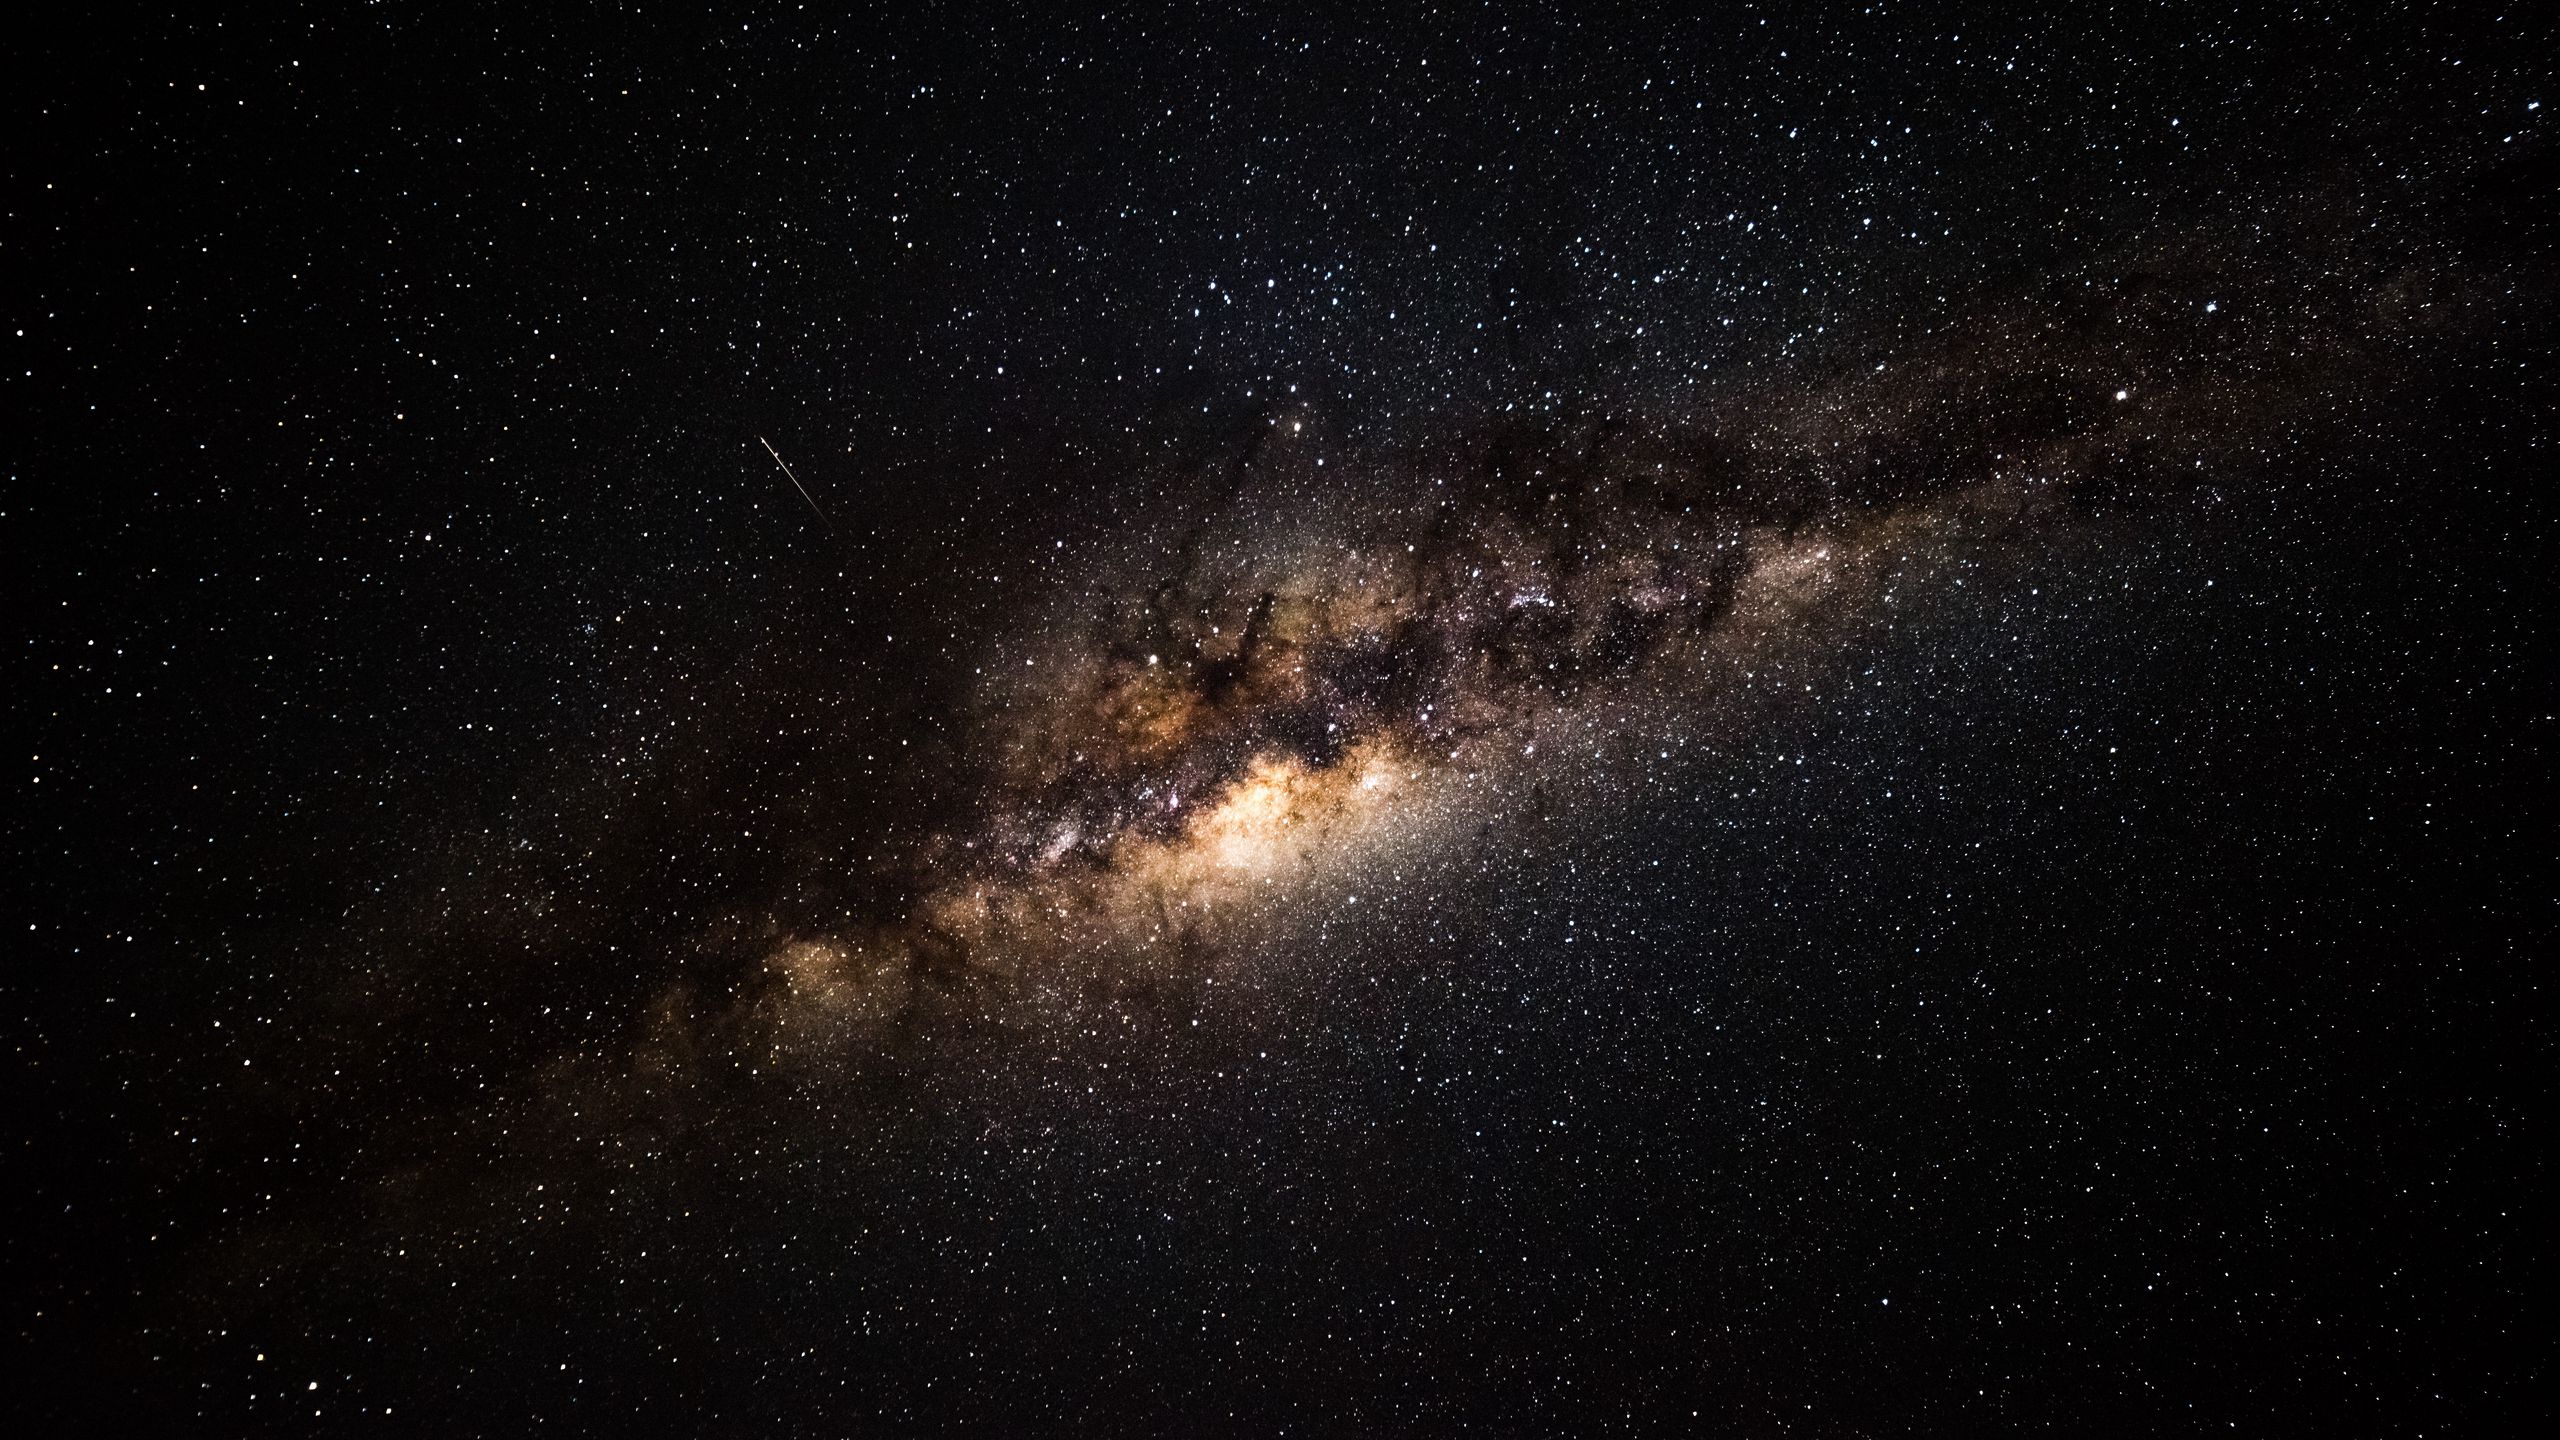 Những bức tranh về non nước ta thật xinh đẹp. Nhưng có lẽ không gì còn tuyệt vời hơn khi nhìn những bức hình thiên hà Milky Way với những vì sao lung linh giữa trời đêm. Tải ngay wallpaper 2560x1440 milky way, starry sky, galaxy để ngắm nhìn khoảnh khắc đó!